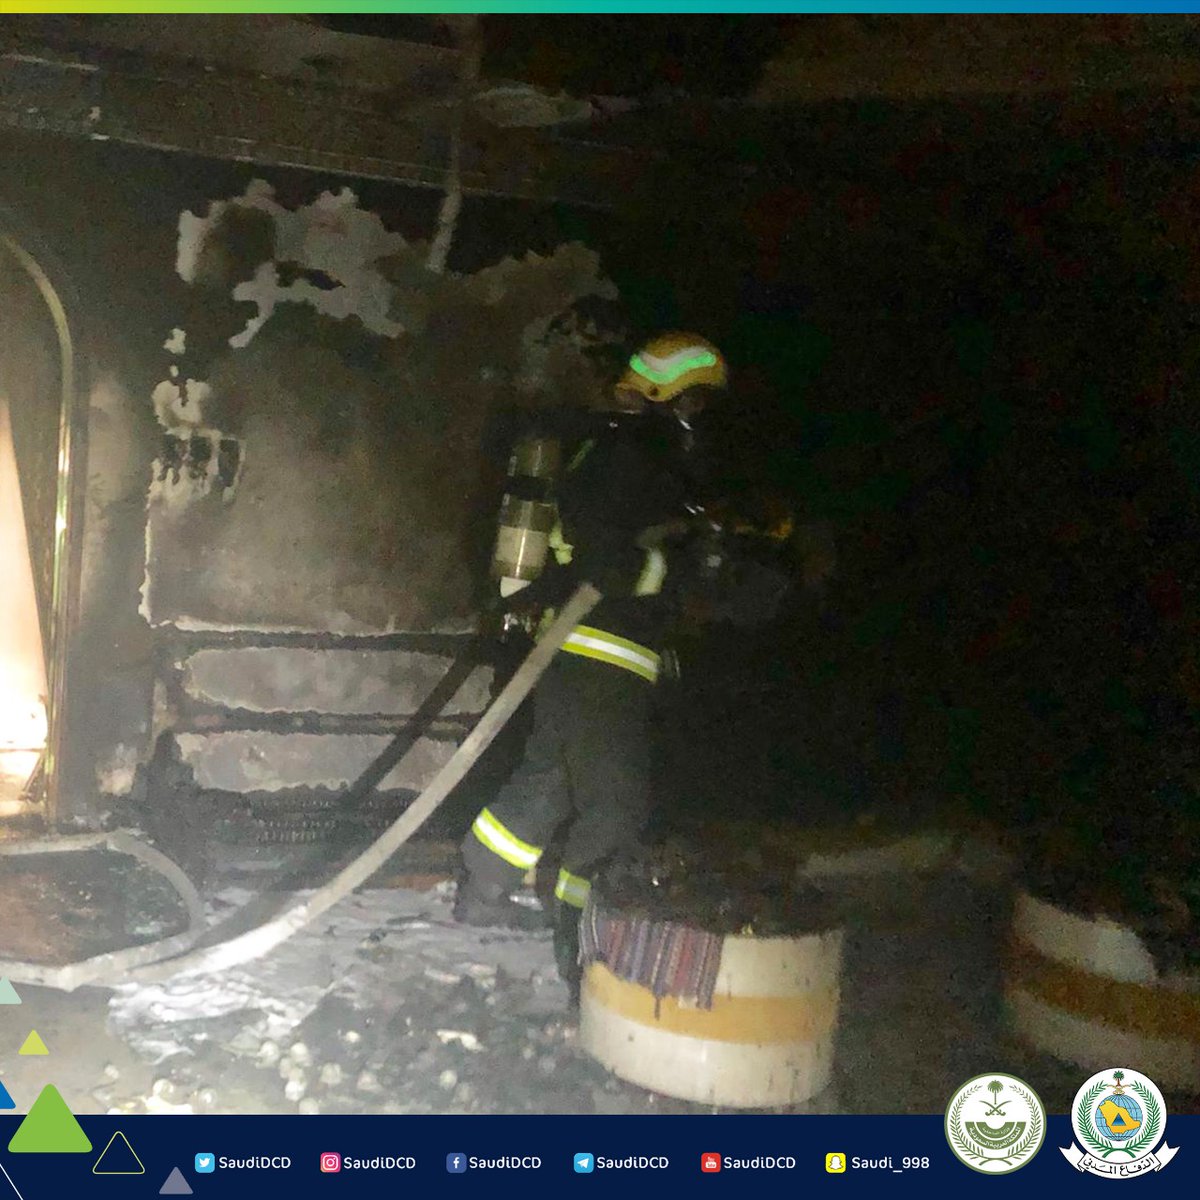 التماس كهربائي يُشعل منزلًا في نجران بدون إصابات